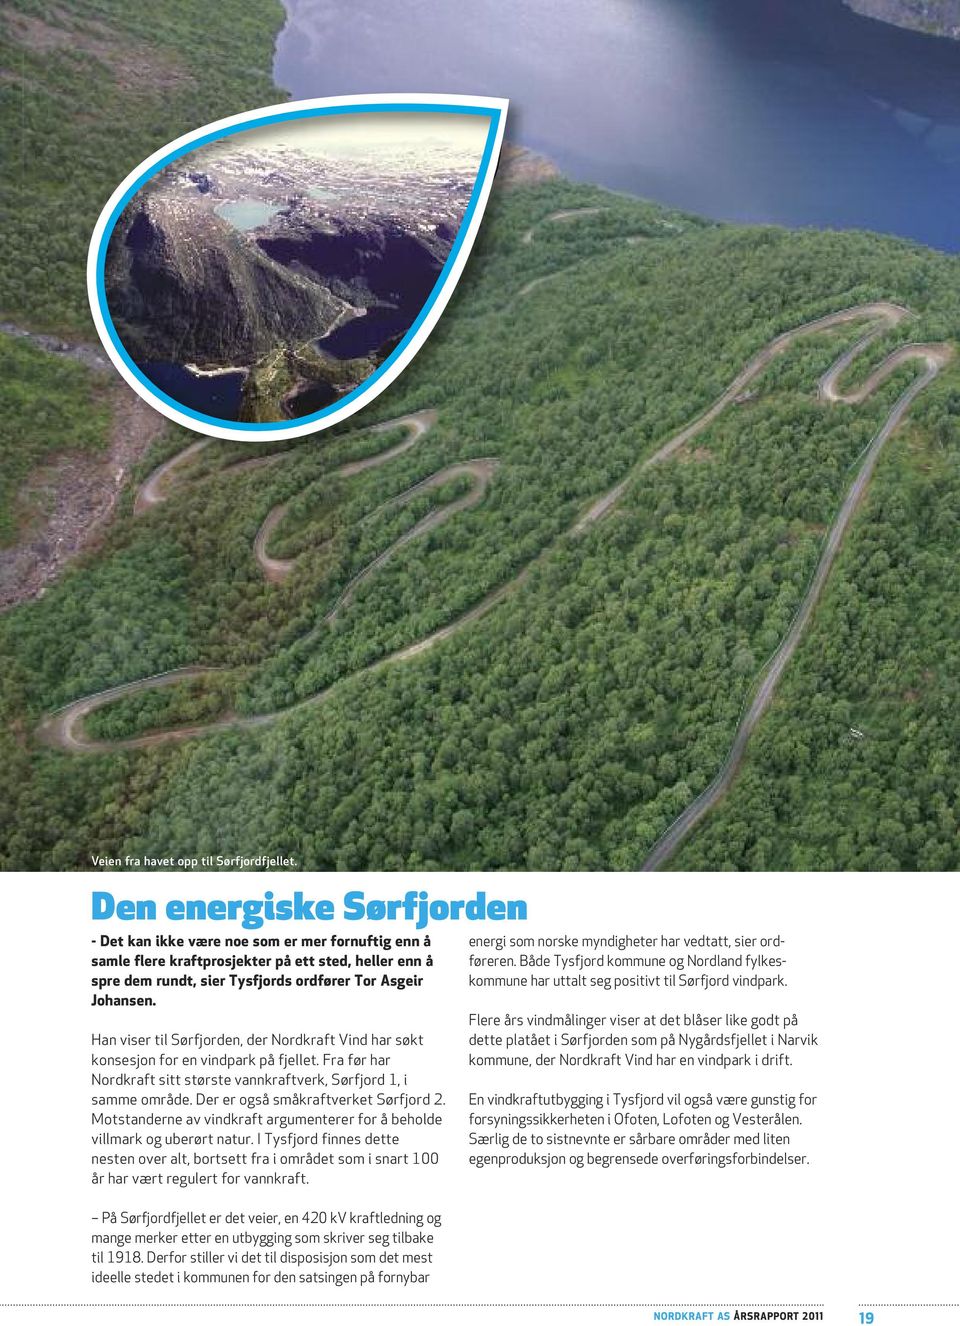 Han viser til Sørfjorden, der Nordkraft Vind har søkt konsesjon for en vindpark på fjellet. Fra før har Nordkraft sitt største vannkraftverk, Sørfjord 1, i samme område.